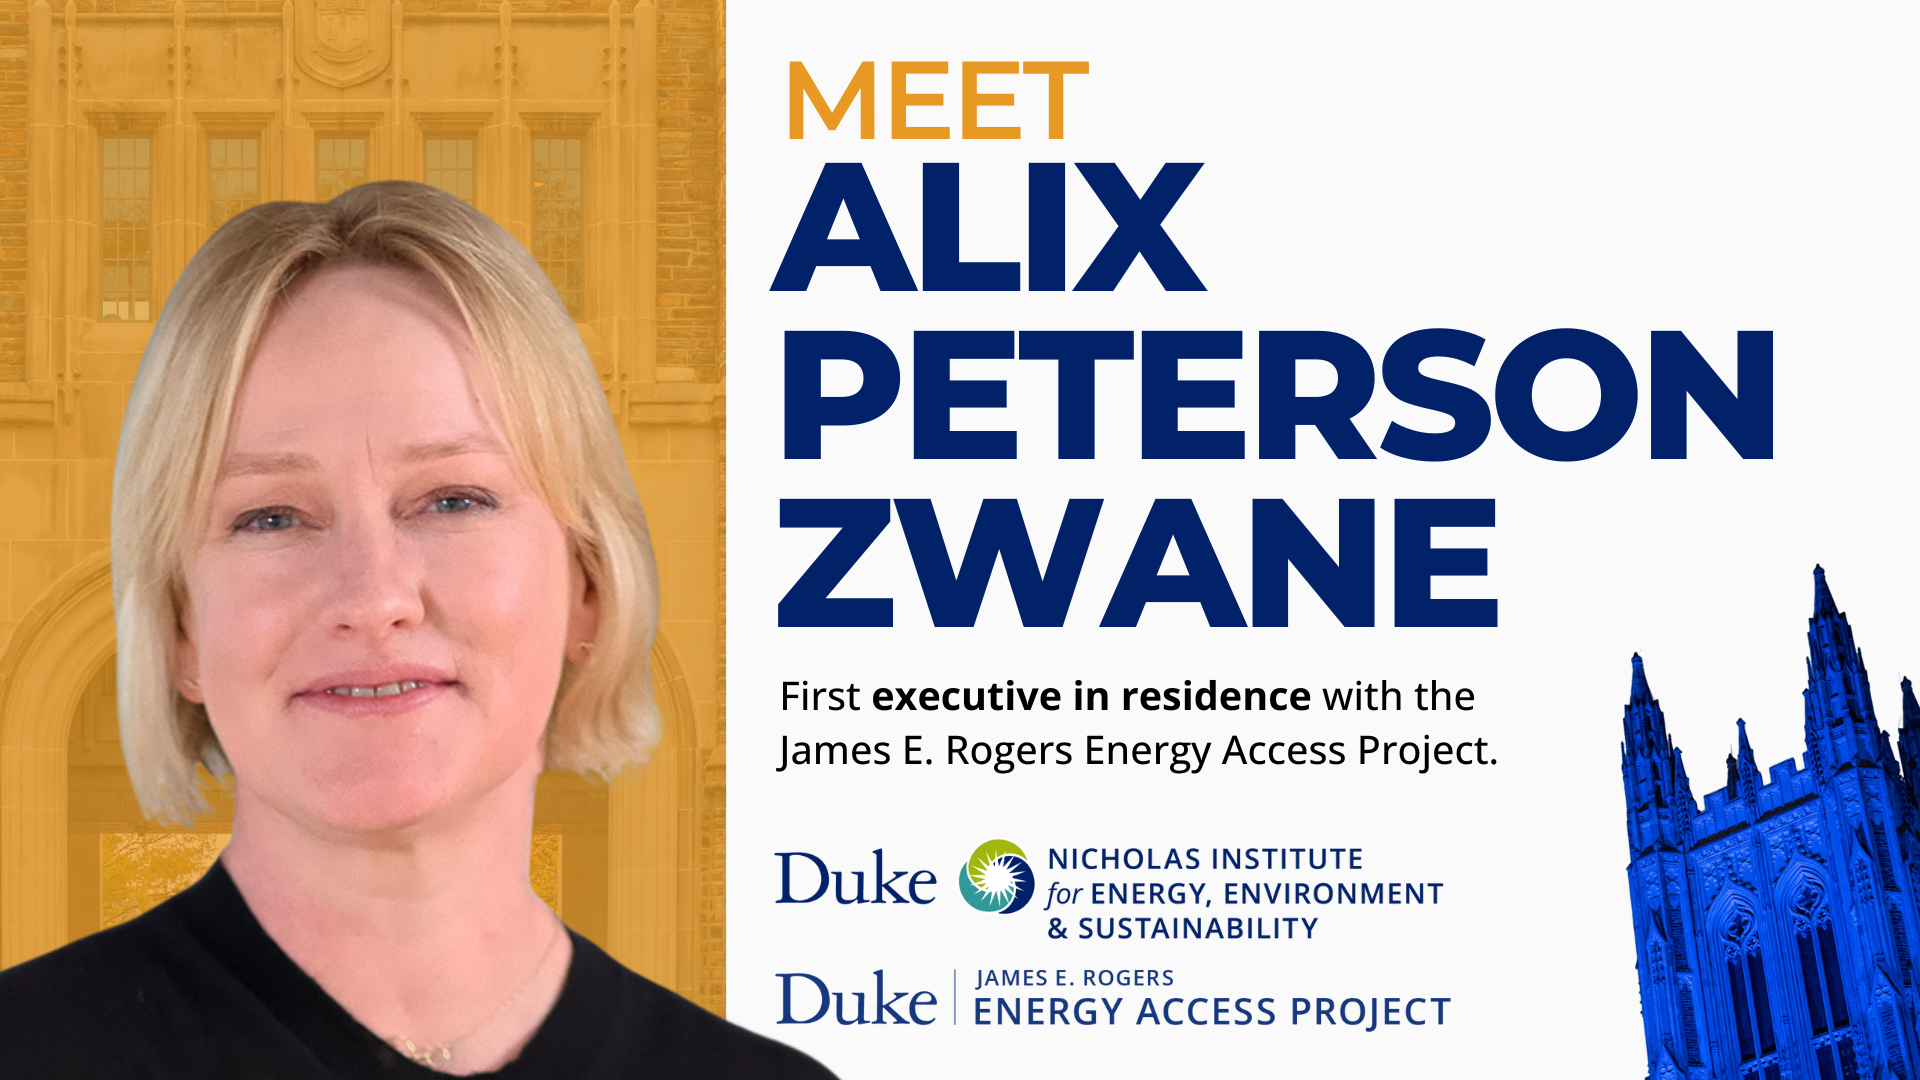 Meet Alix Peterson Zwane